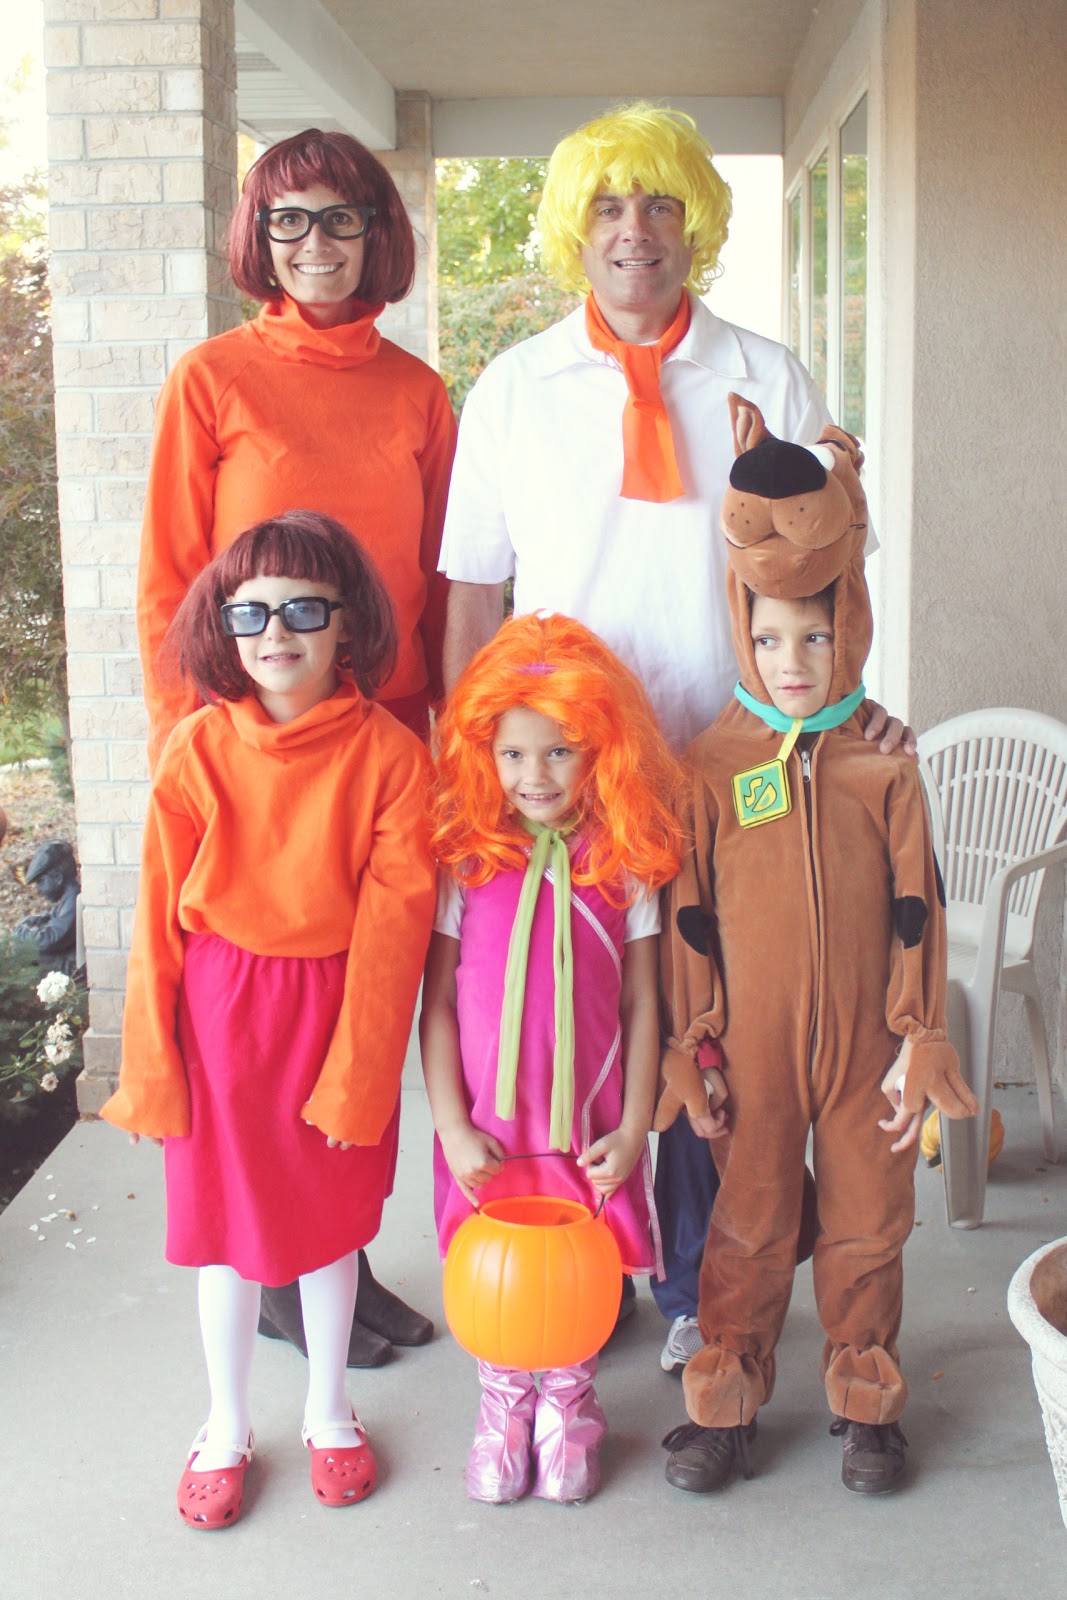 Scooby Doo Velma Toddler Costume